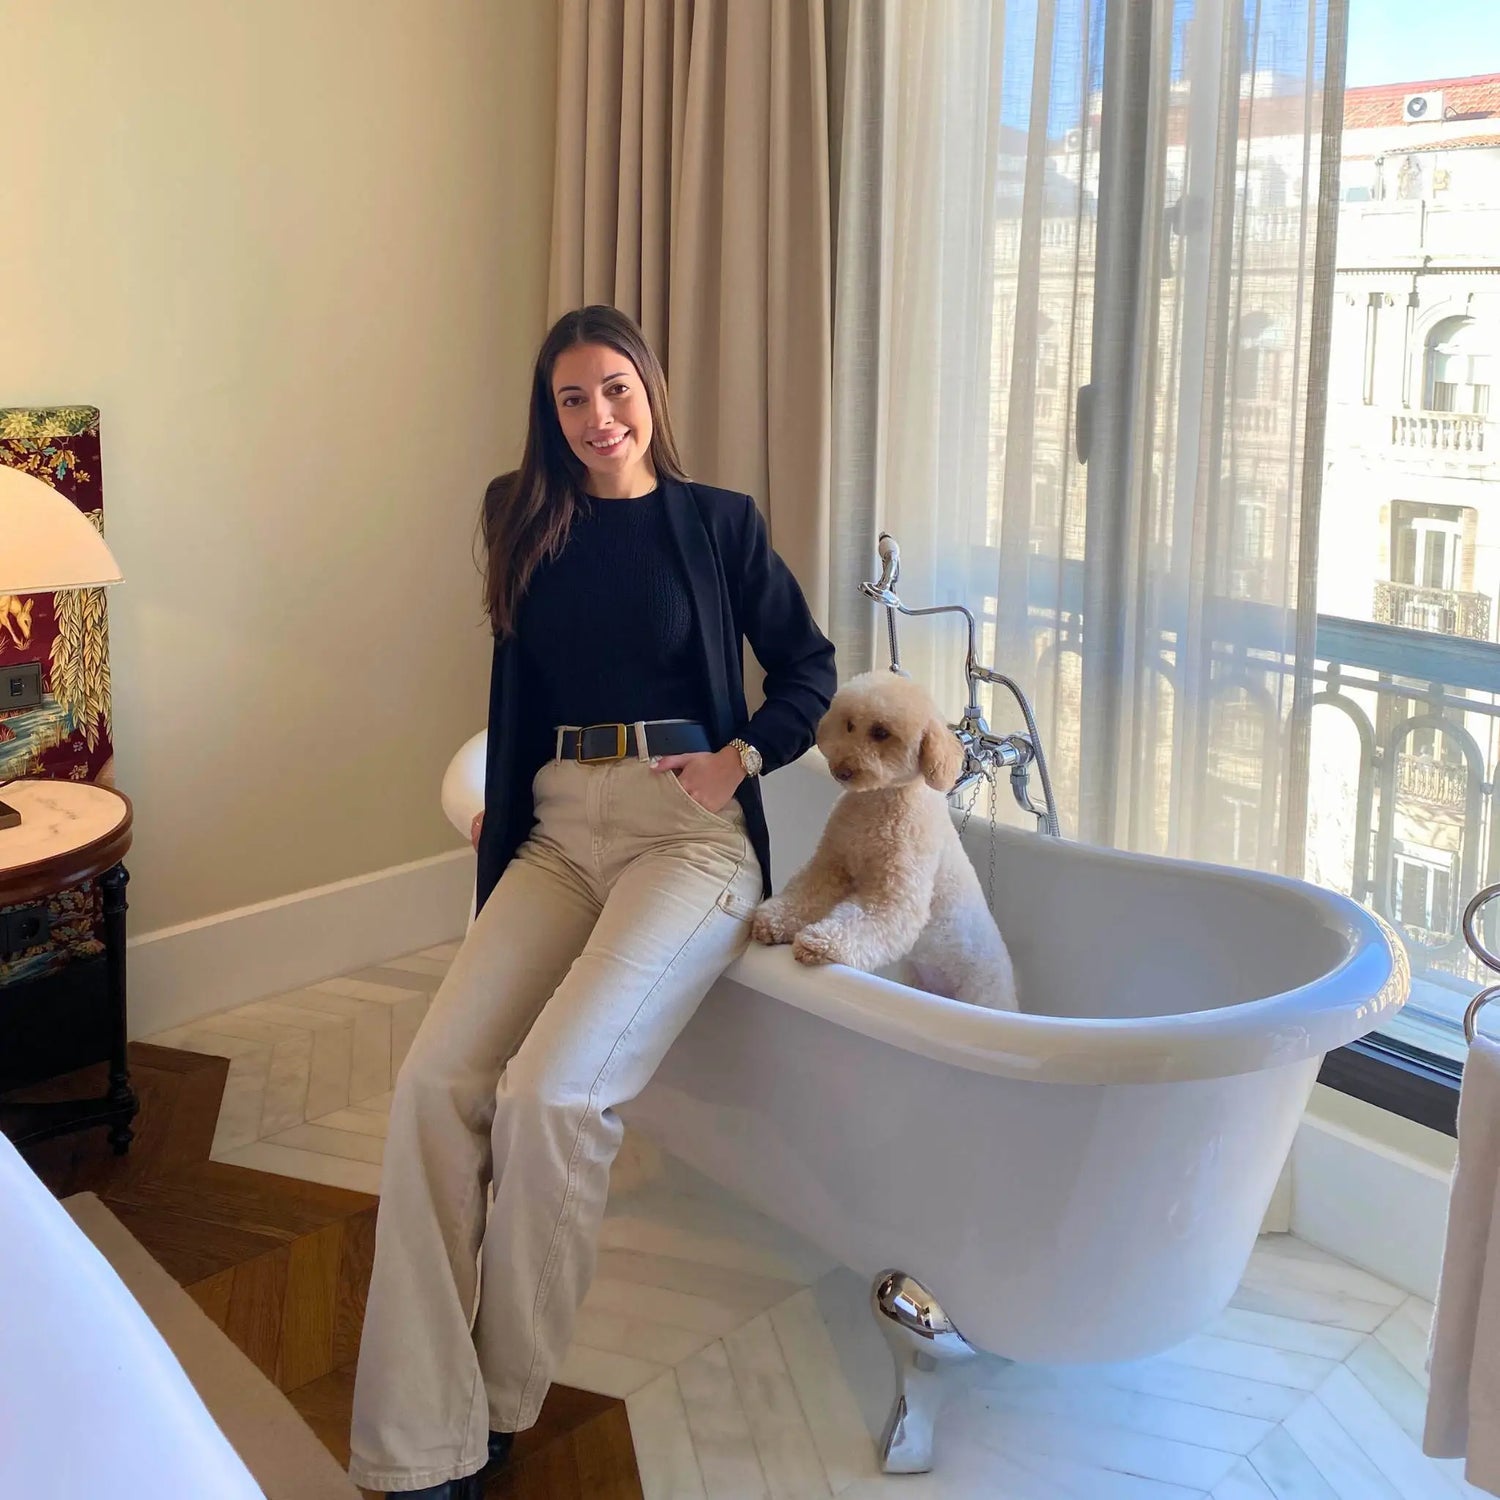 Lorena - fundadora de la tienda Herriet - Tienda De Accesorios Para el Hogar - Velas Aromáticas, Pijamas y accesorios de seda. En la foto sale Lorena con su perro Charlie en el hotel Bless de Madrid